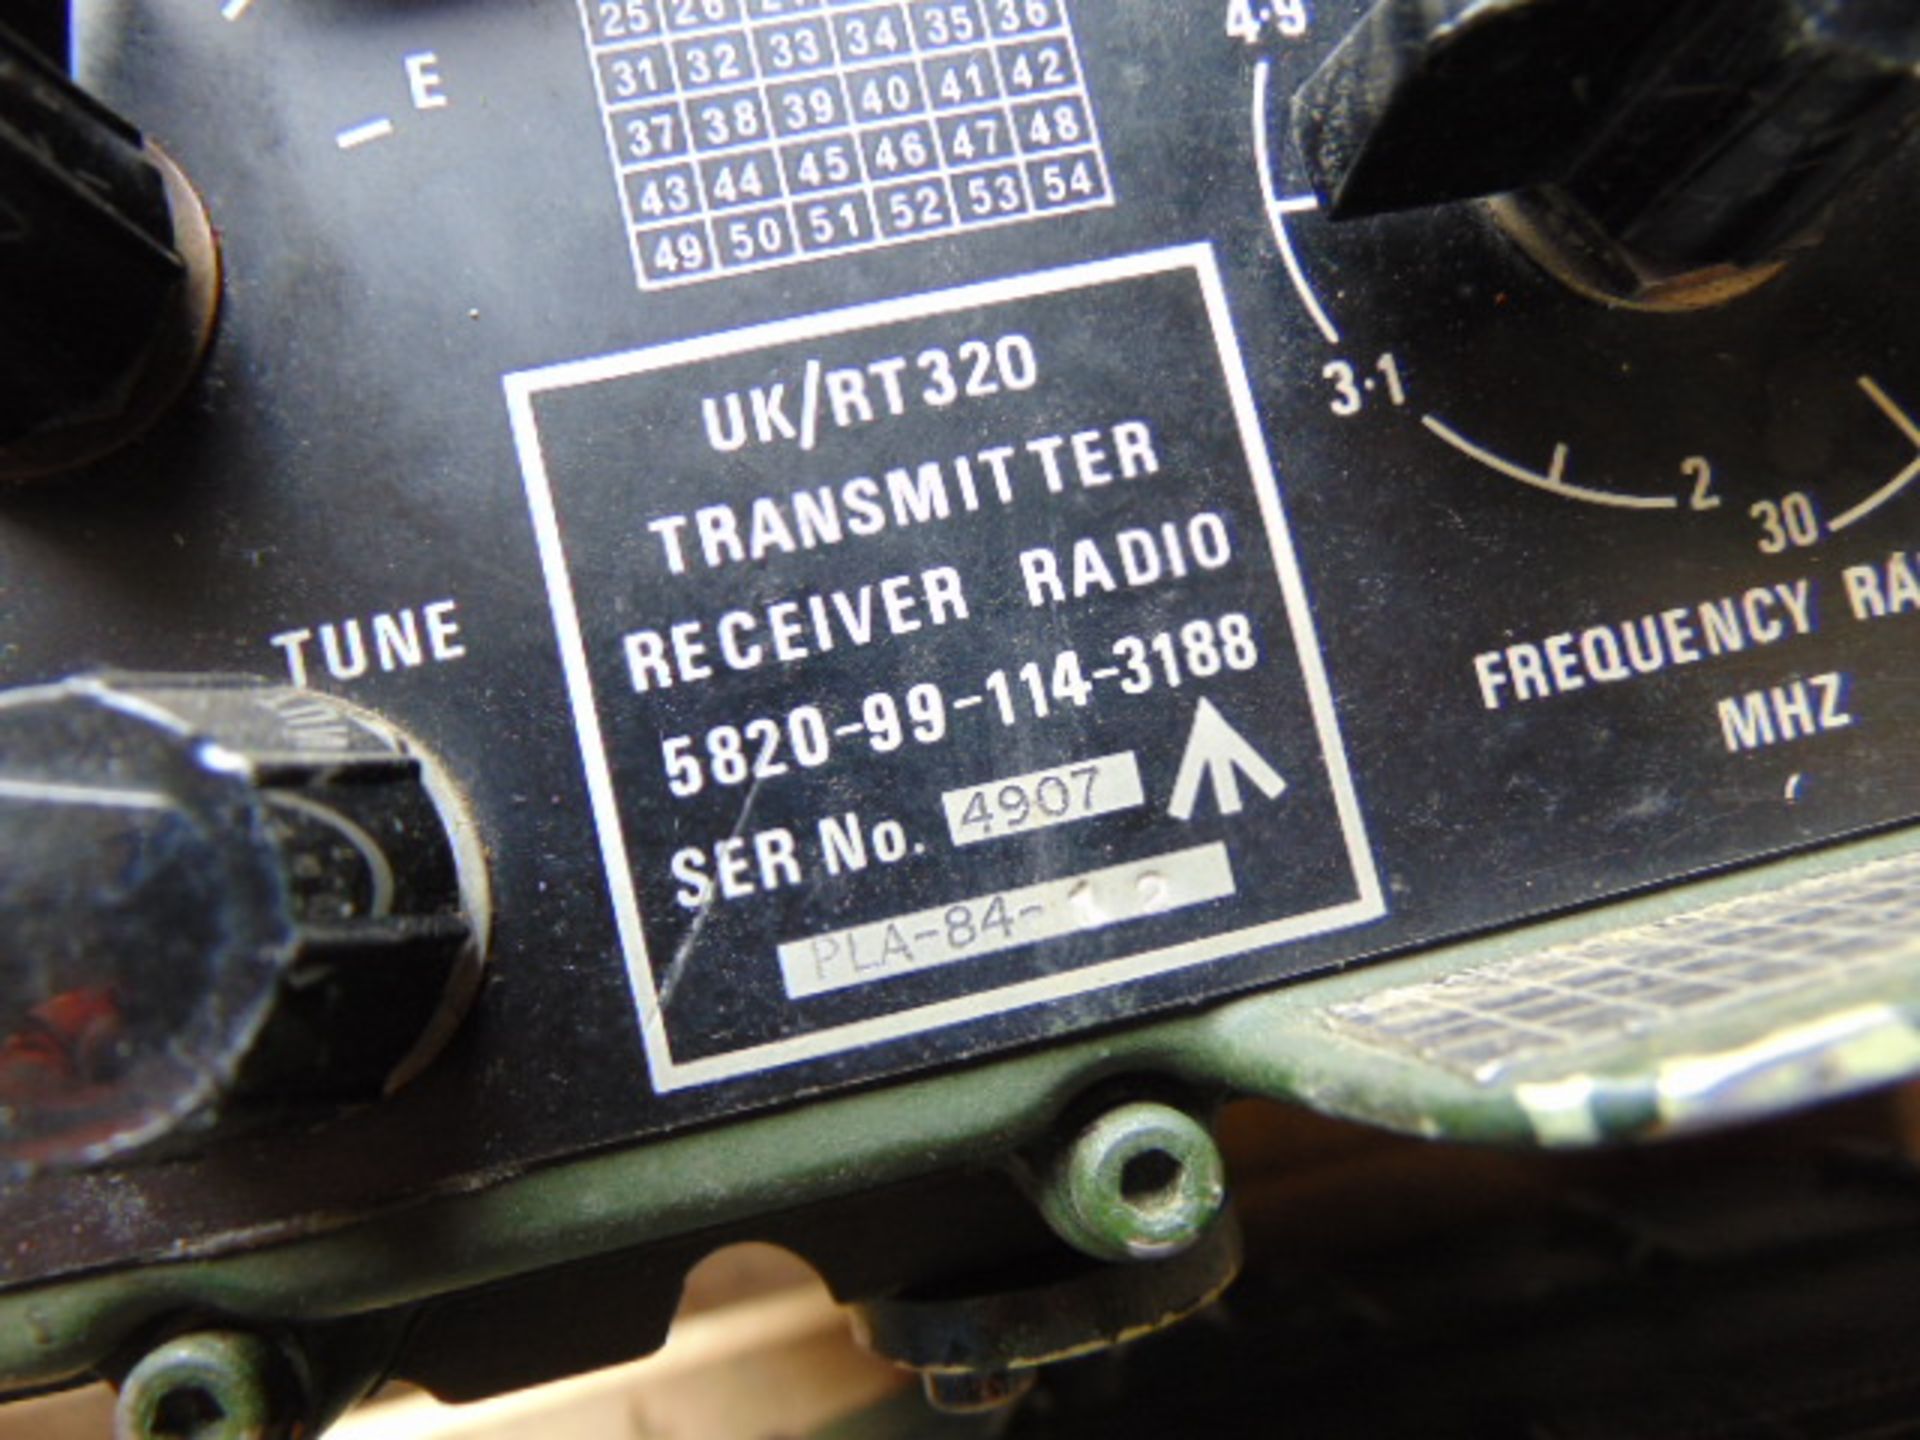 2 x Clansman RT320 Transmiter Receiver Radios - Image 5 of 11